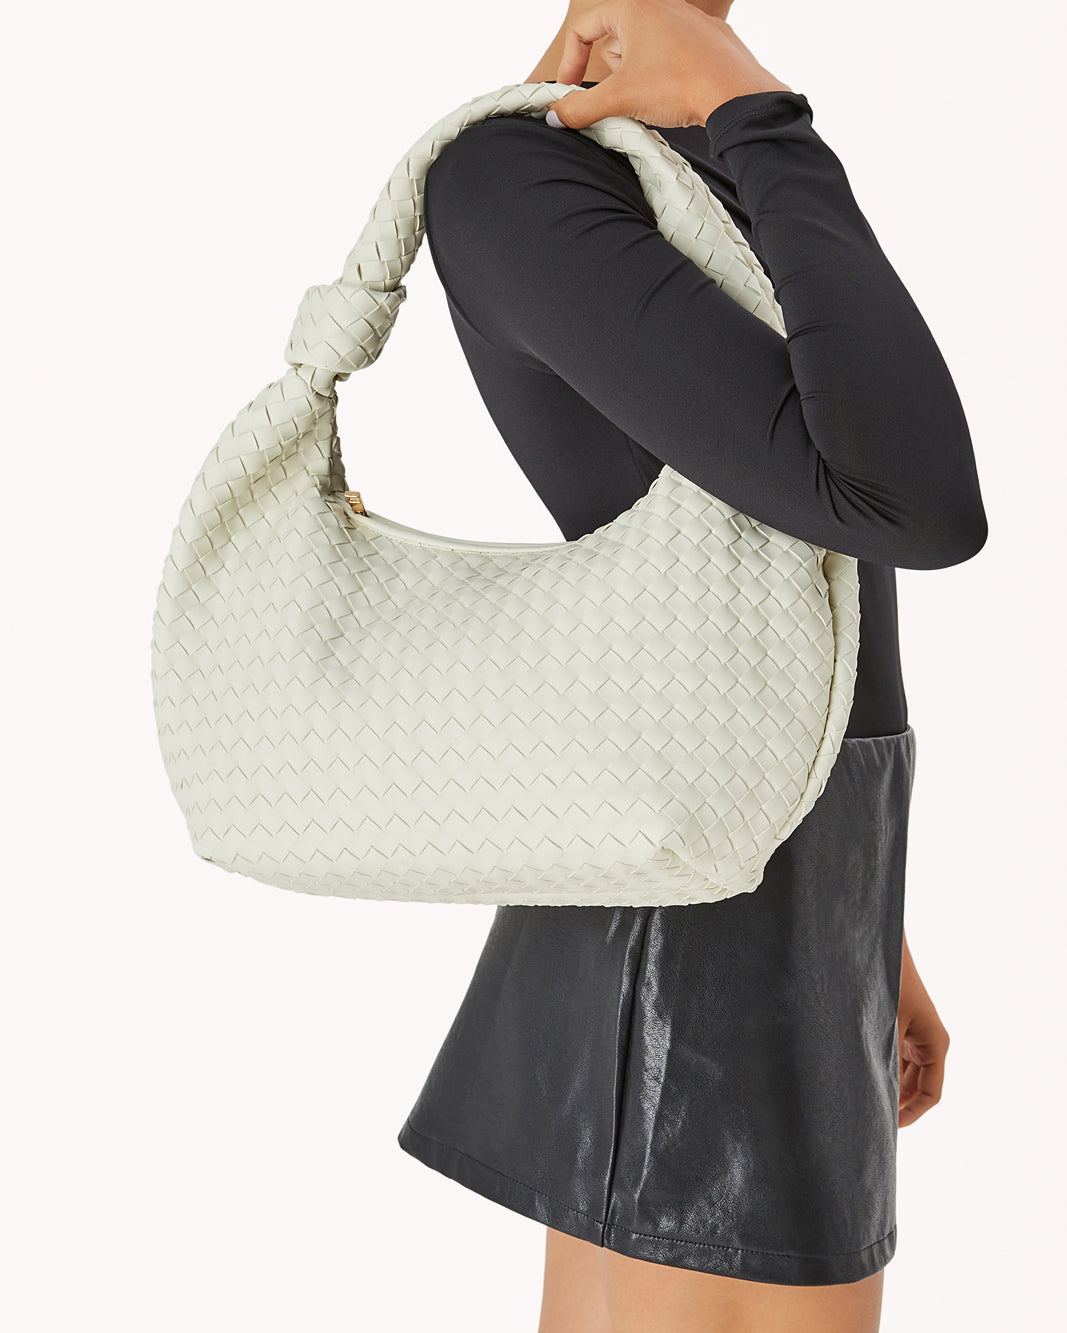 KENYA SHOULDER BAG - BONE-Handbags-Billini--Billini